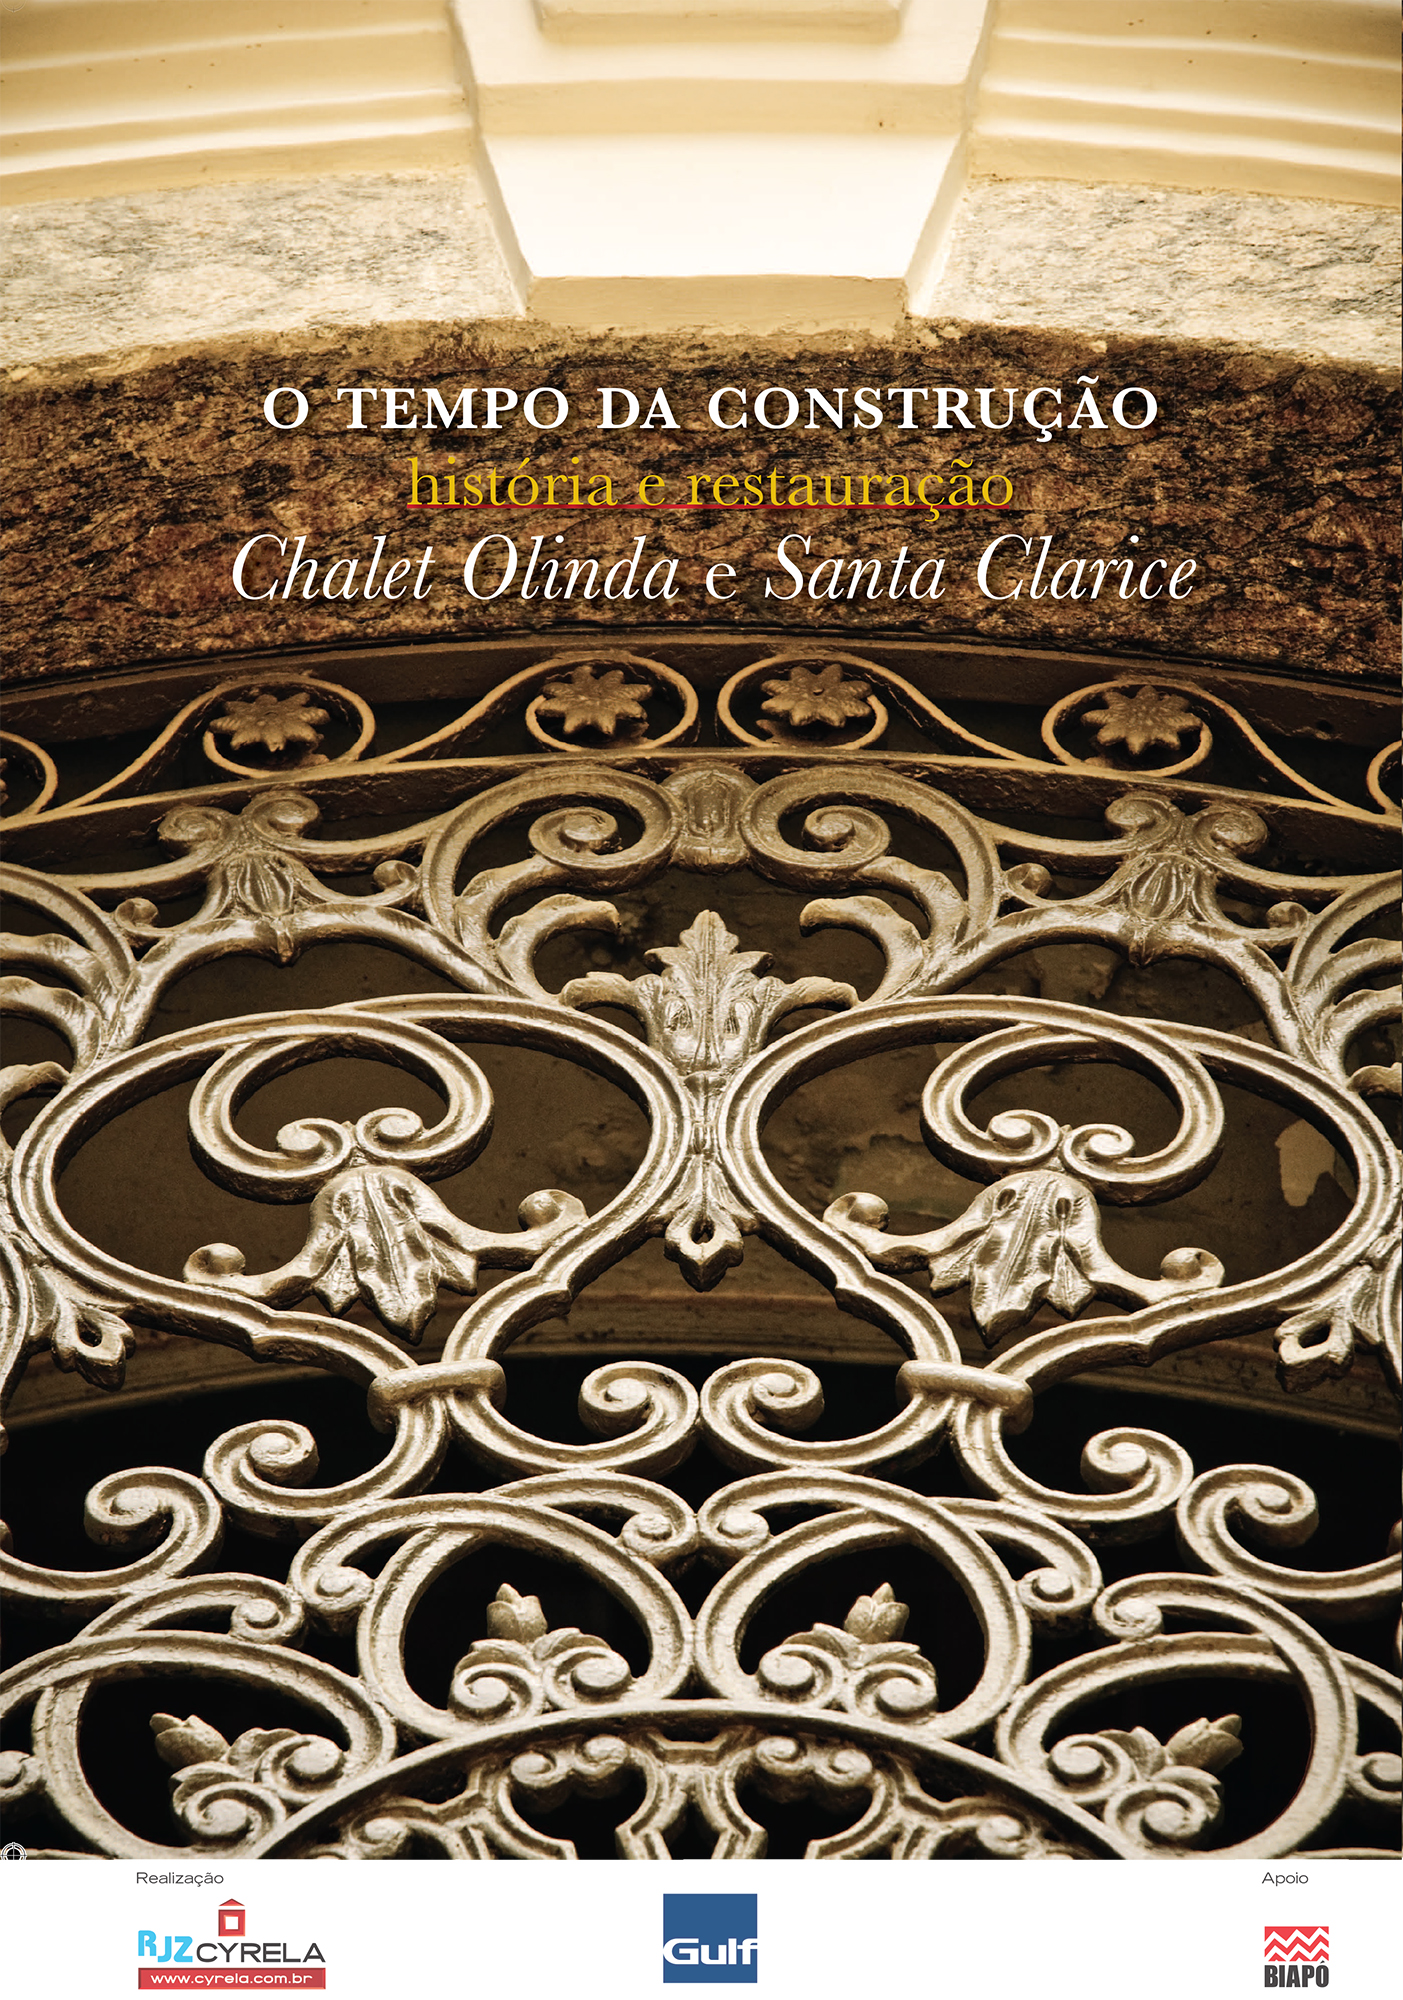 O tempo da construção / Restauro de casarões históricos em Botafogo / Rio de Janeiro